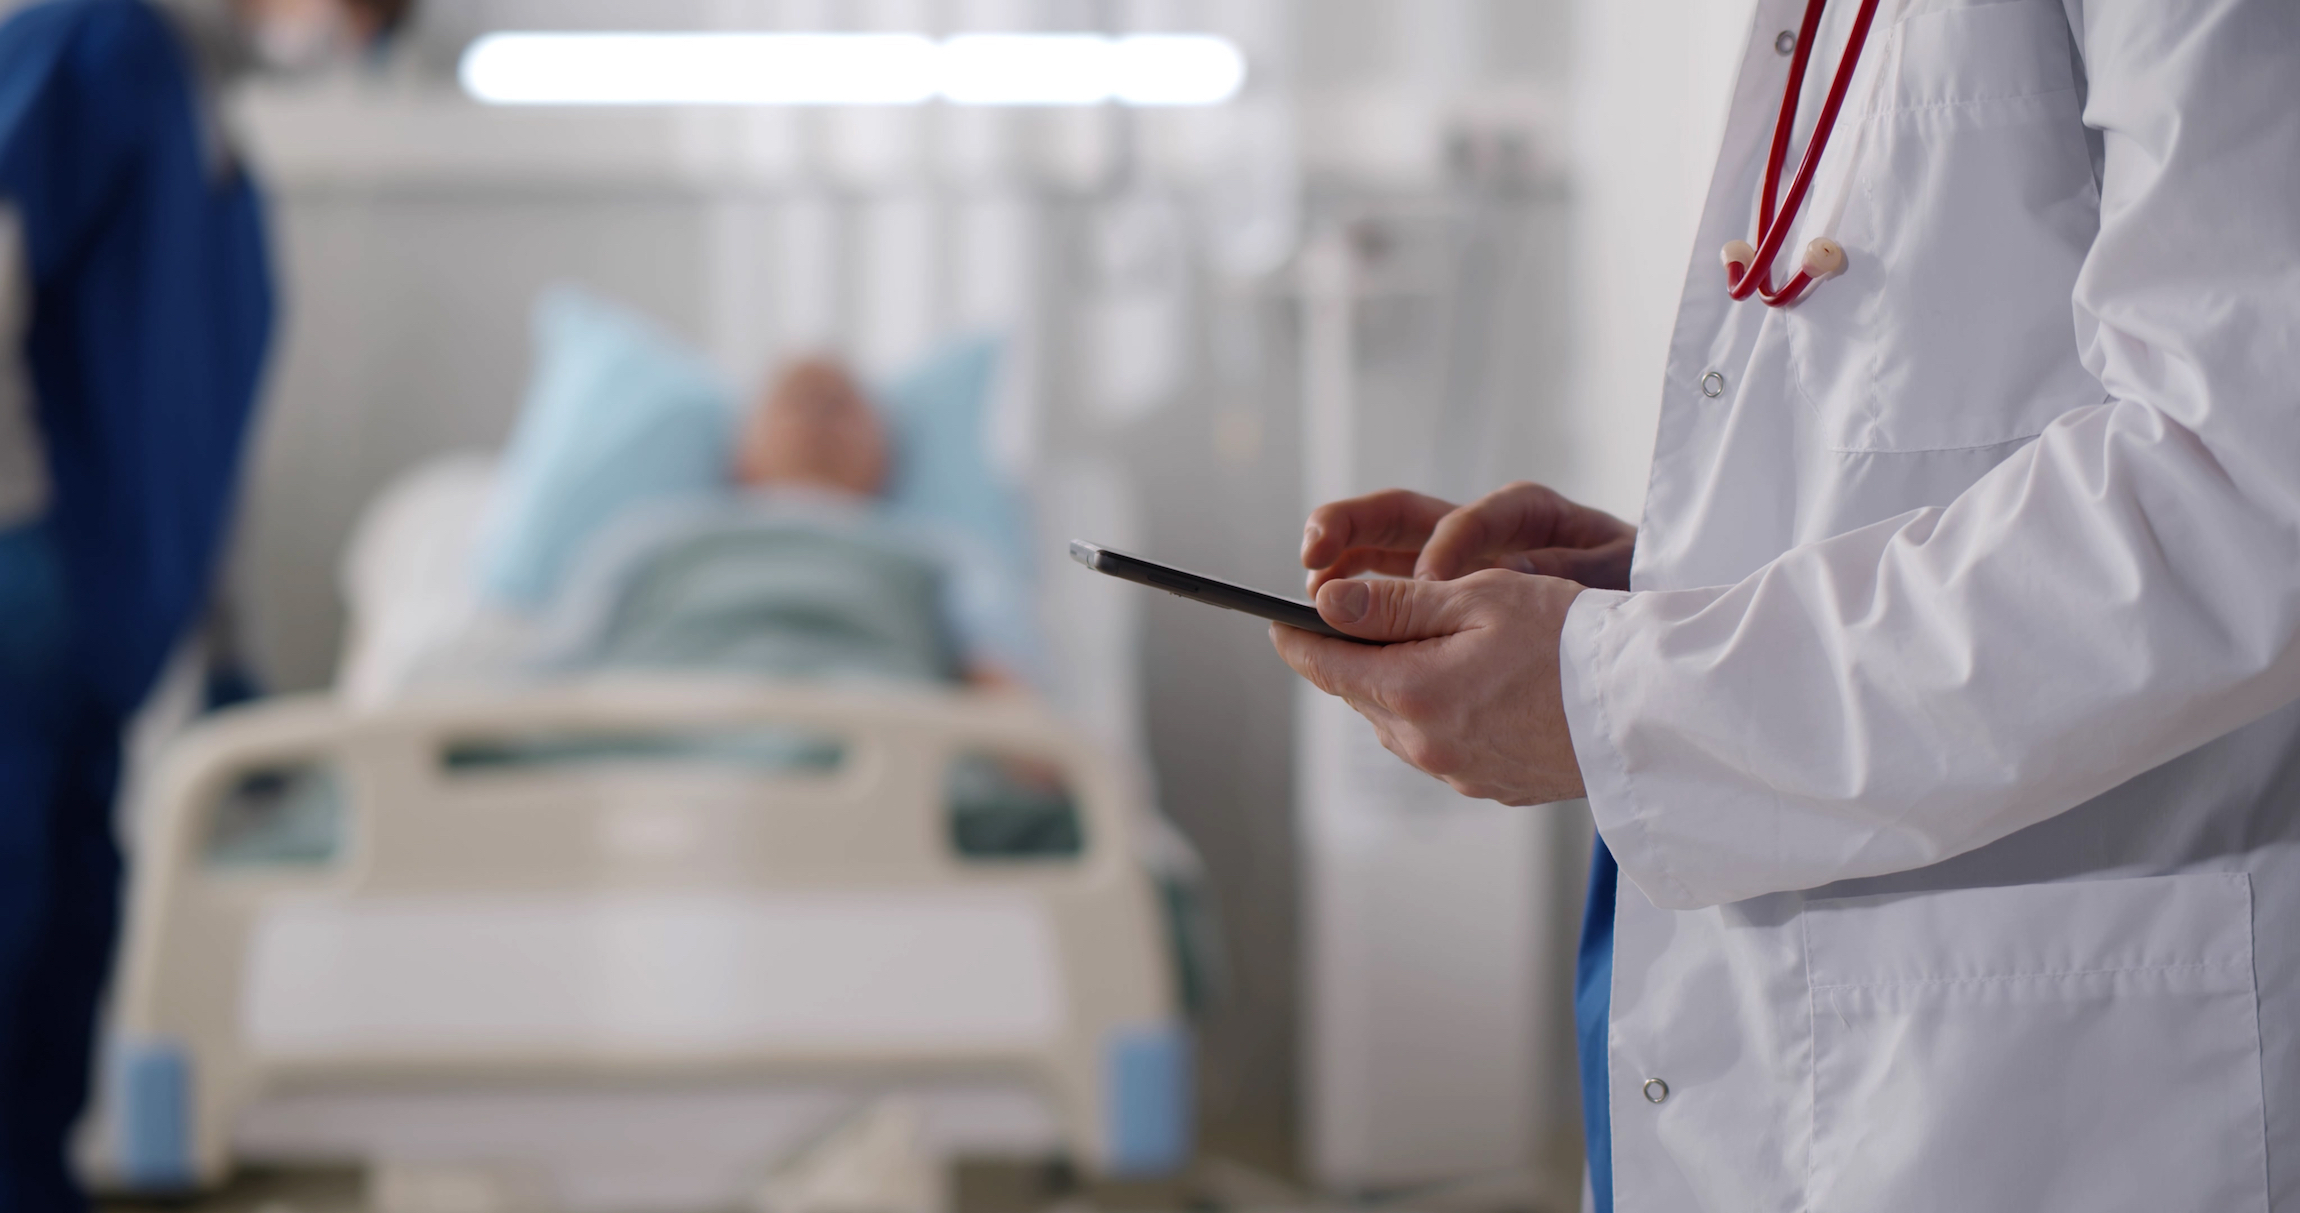 Przycięty strzał lekarza w mundurze ze stetoskopem przy użyciu tabletu PC stojącego na oddziale szpitalnym z pacjentem spoczywa w łóżku na tle. Praktyk sprawdzający dane pacjenta na tablecie cyfrowym